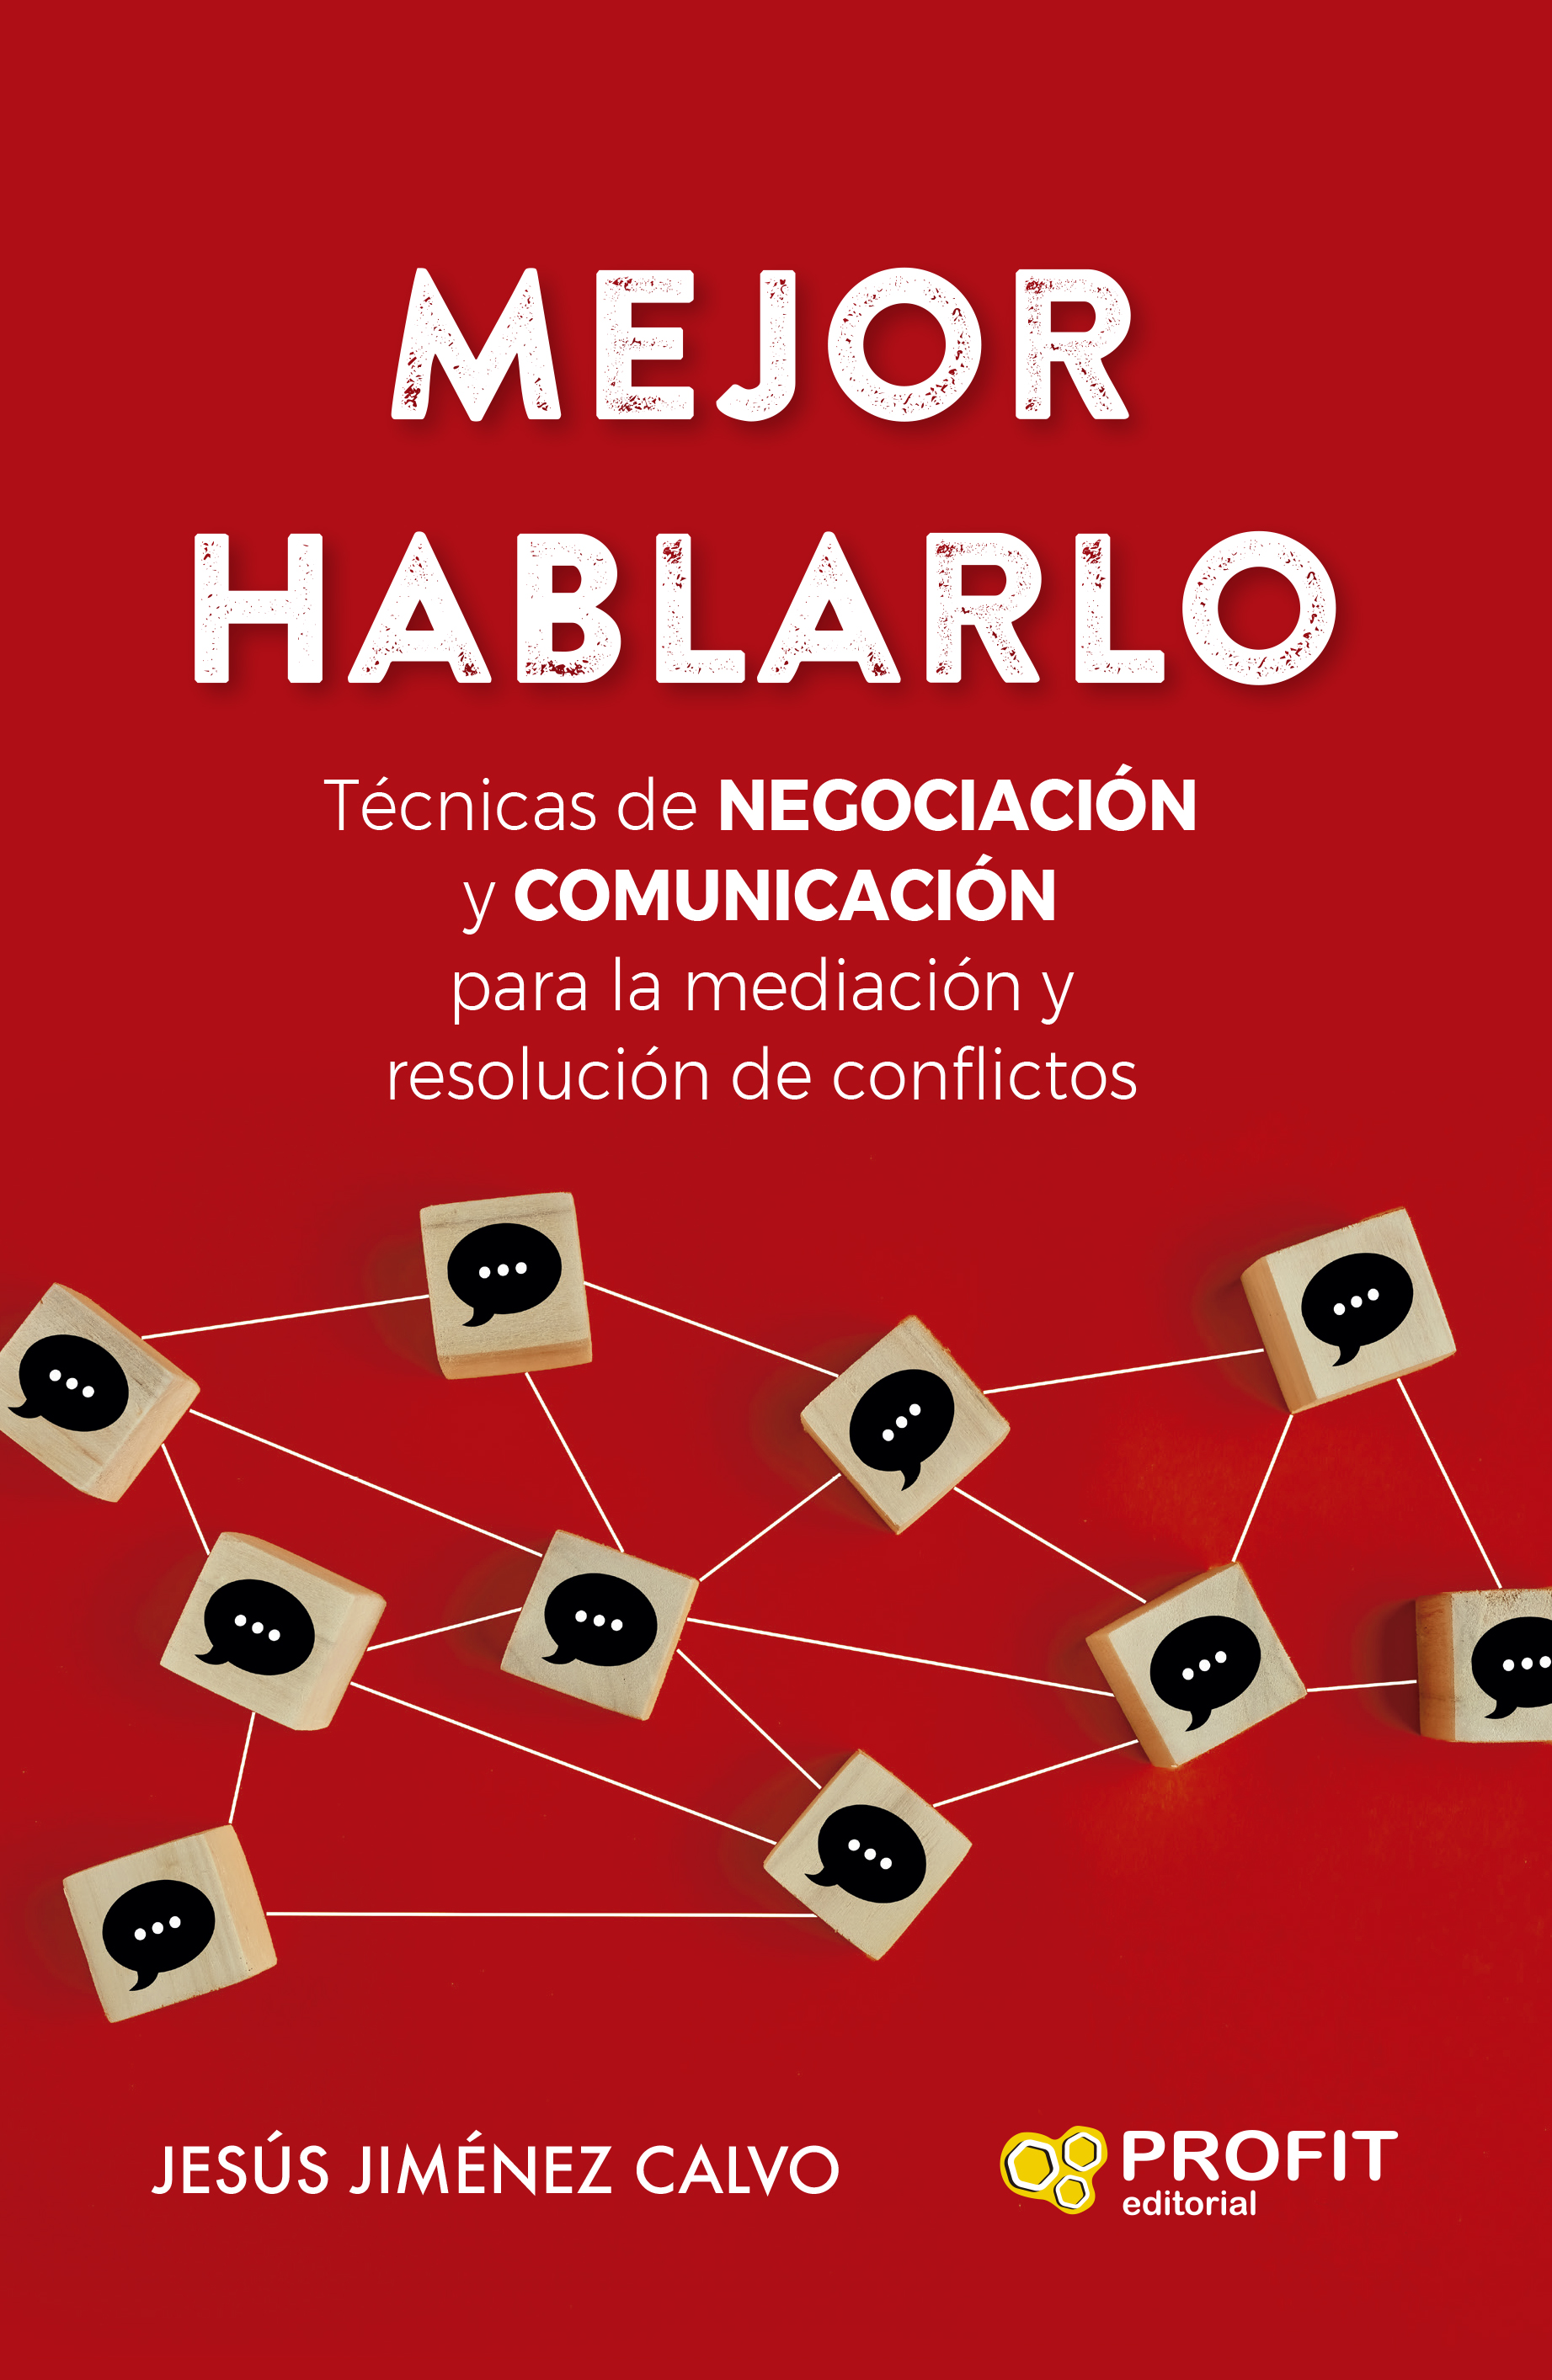 Mejor hablarlo   «Técnicas de NEGOCIACIÓN y COMUNICACIÓN para la mediación y resolución de conflictos»